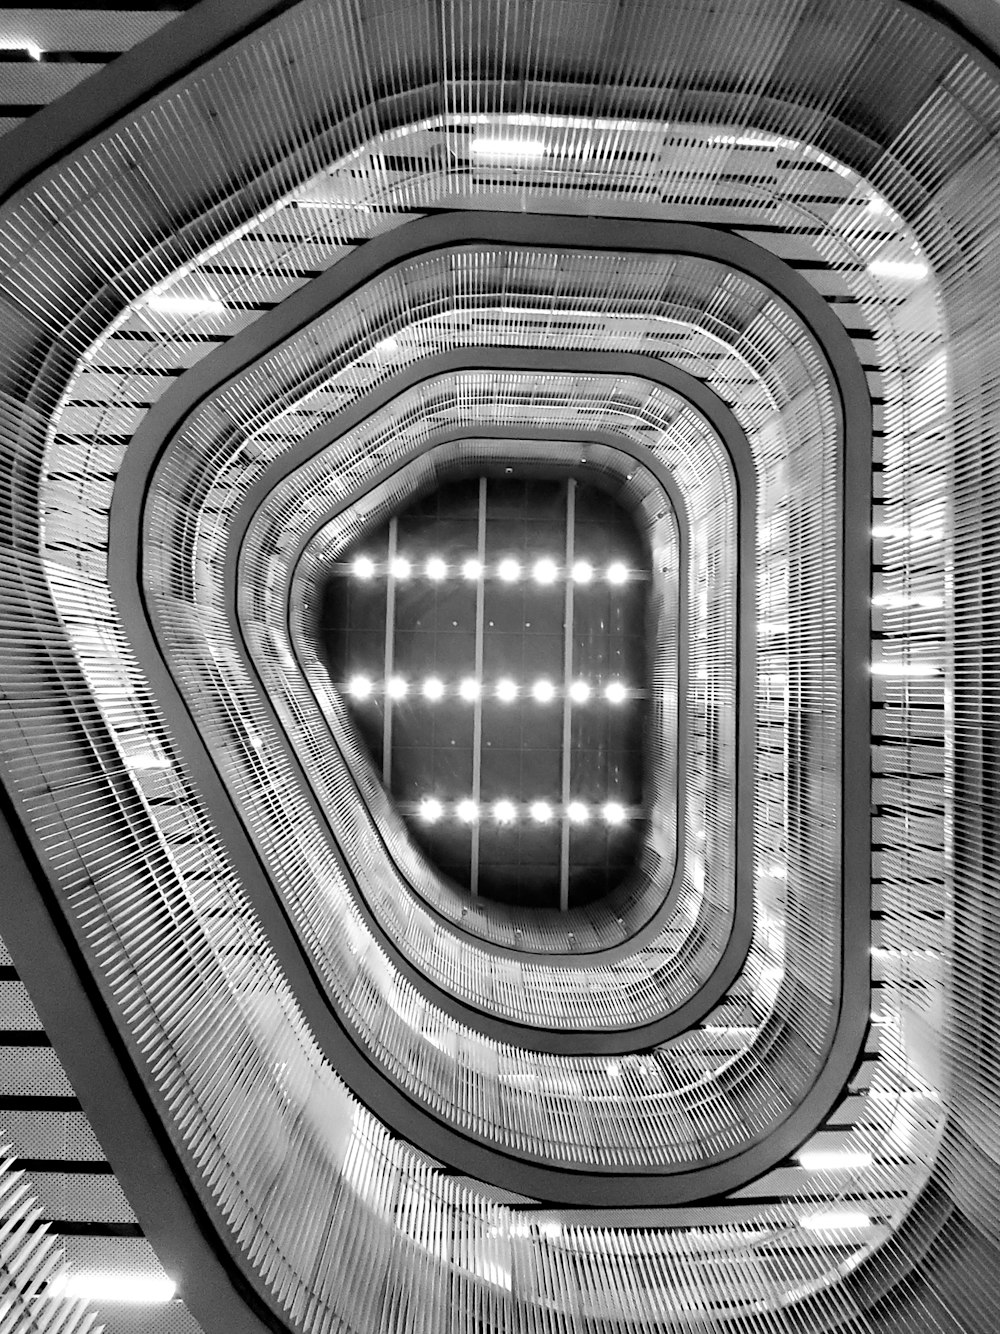 Photographie en niveaux de gris d’escaliers en colimaçon